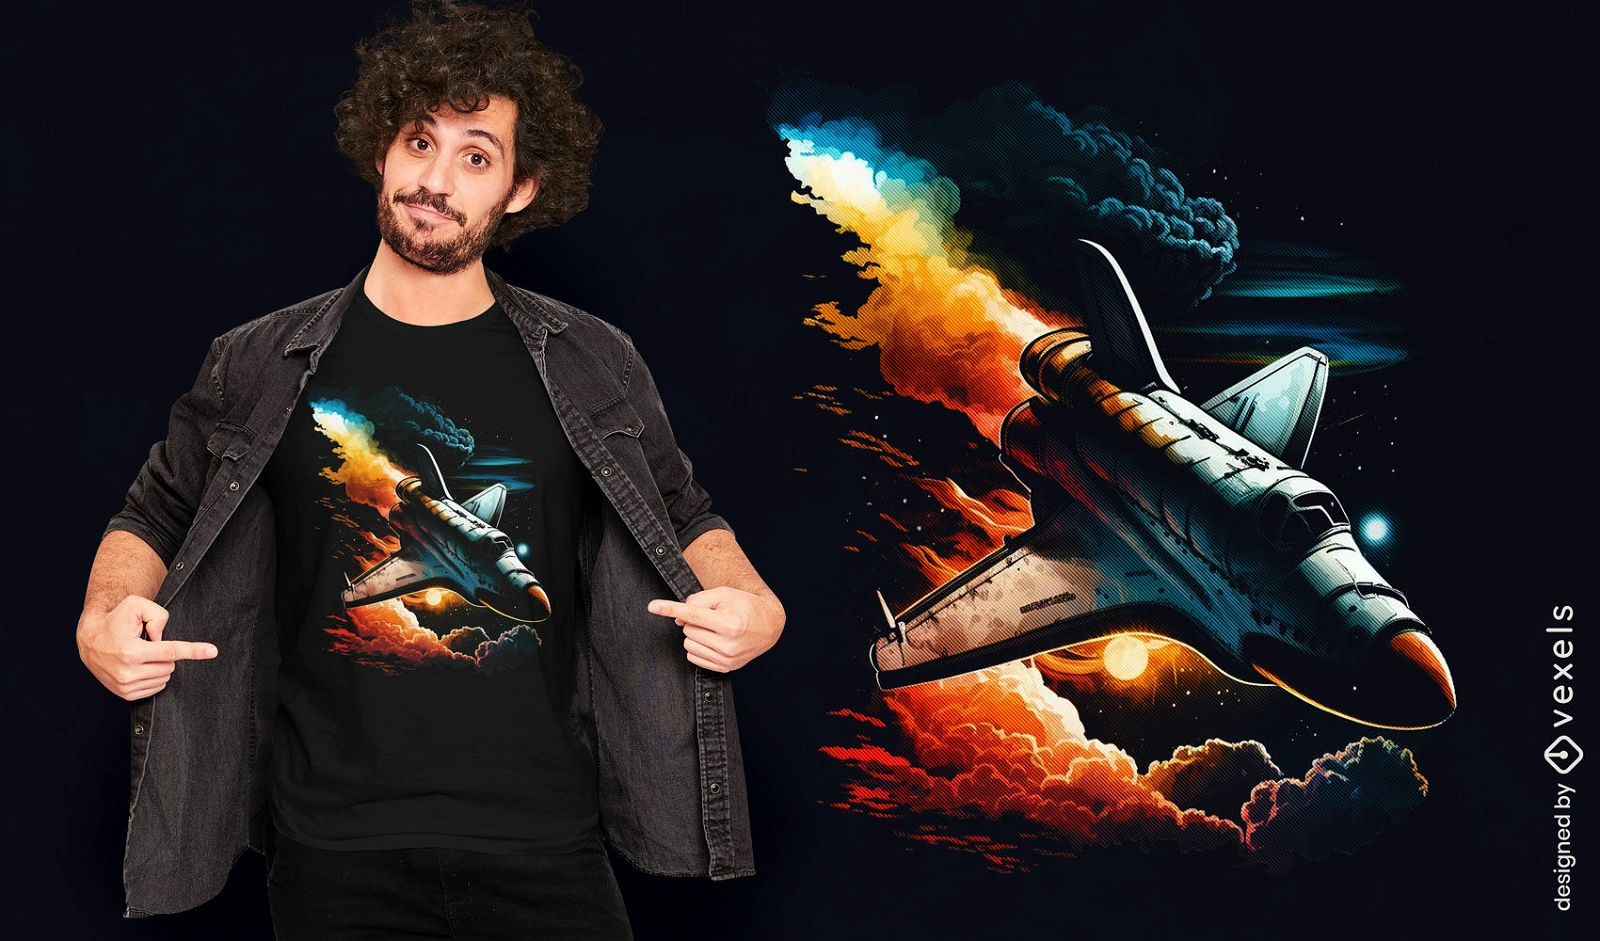 Diseño de camiseta de lanzamiento del transbordador espacial.